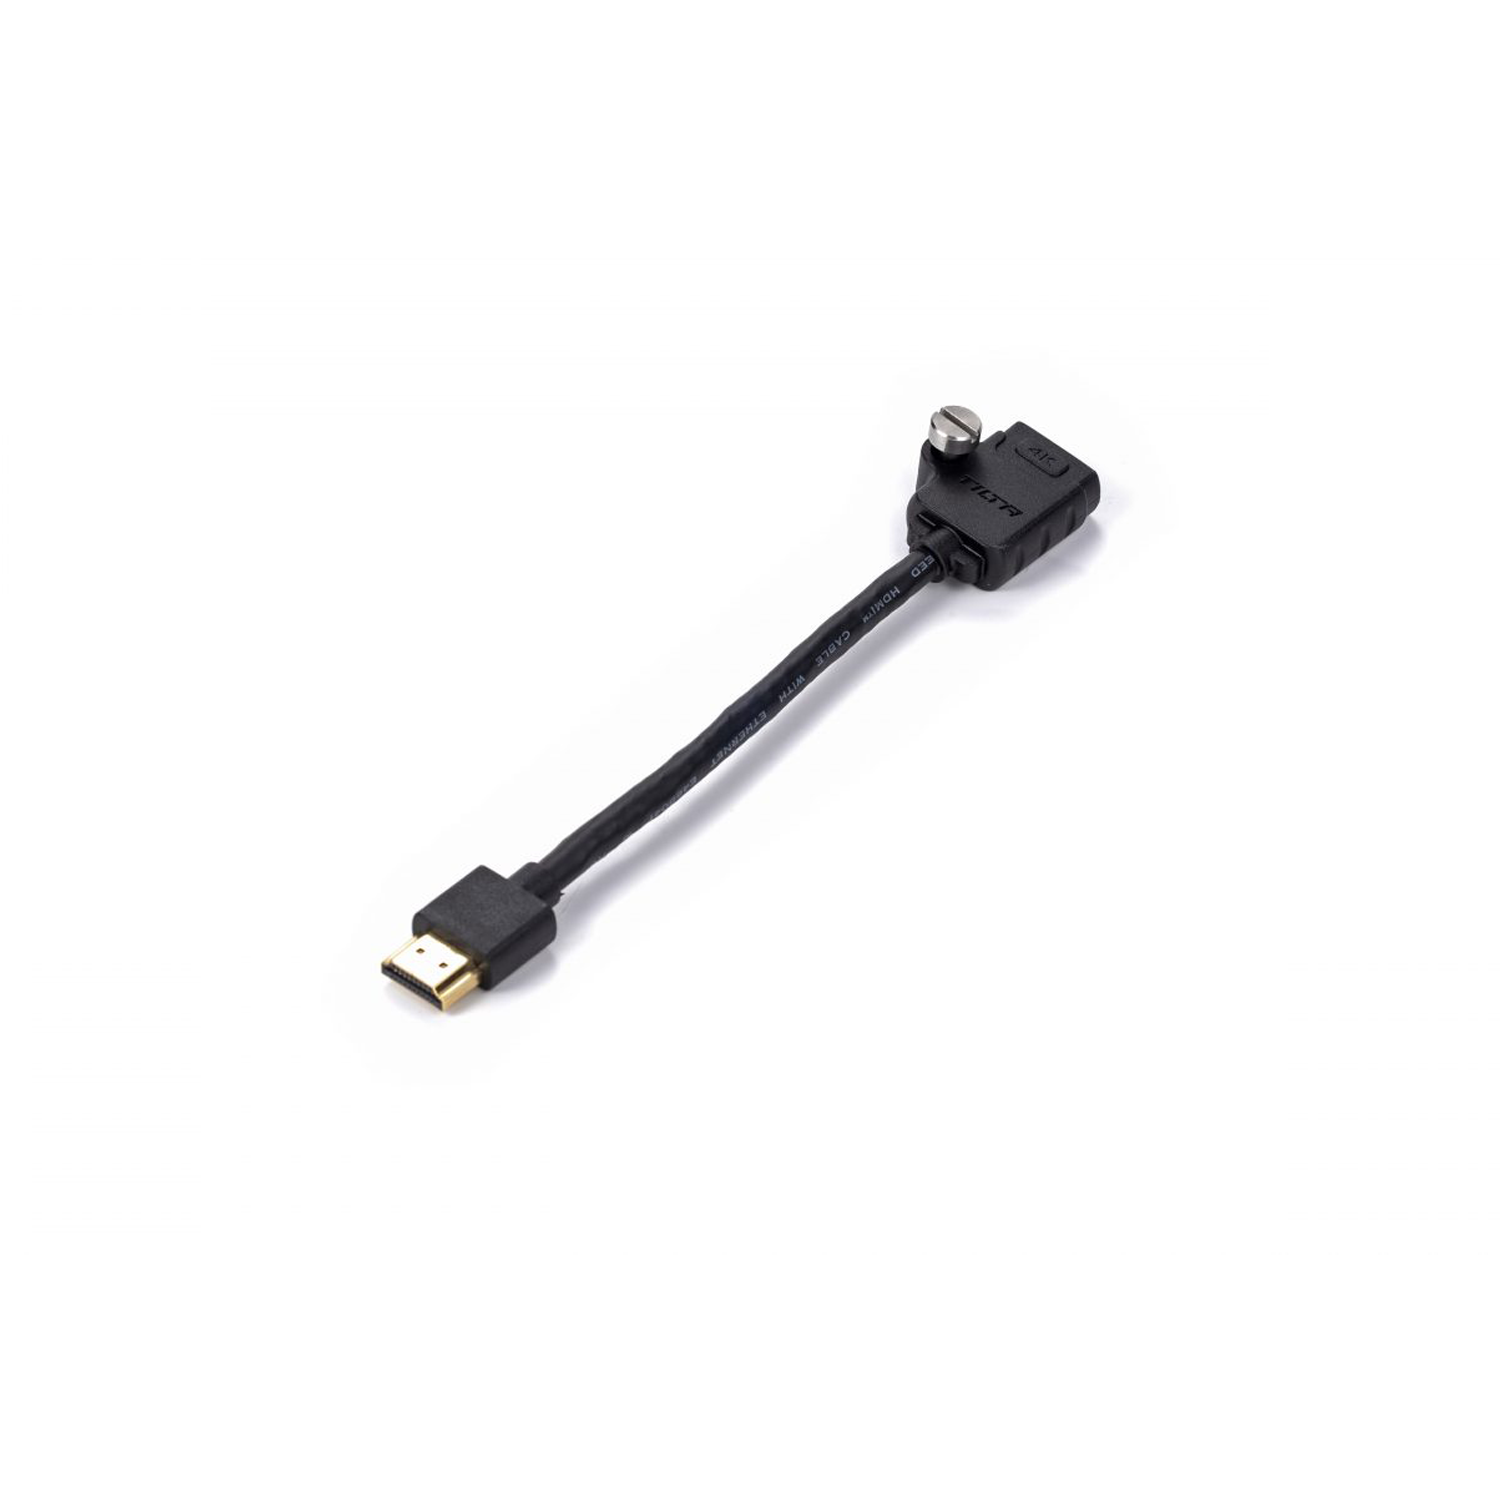 Tilta HDMI Male to HDMI Female Cable (17cm)